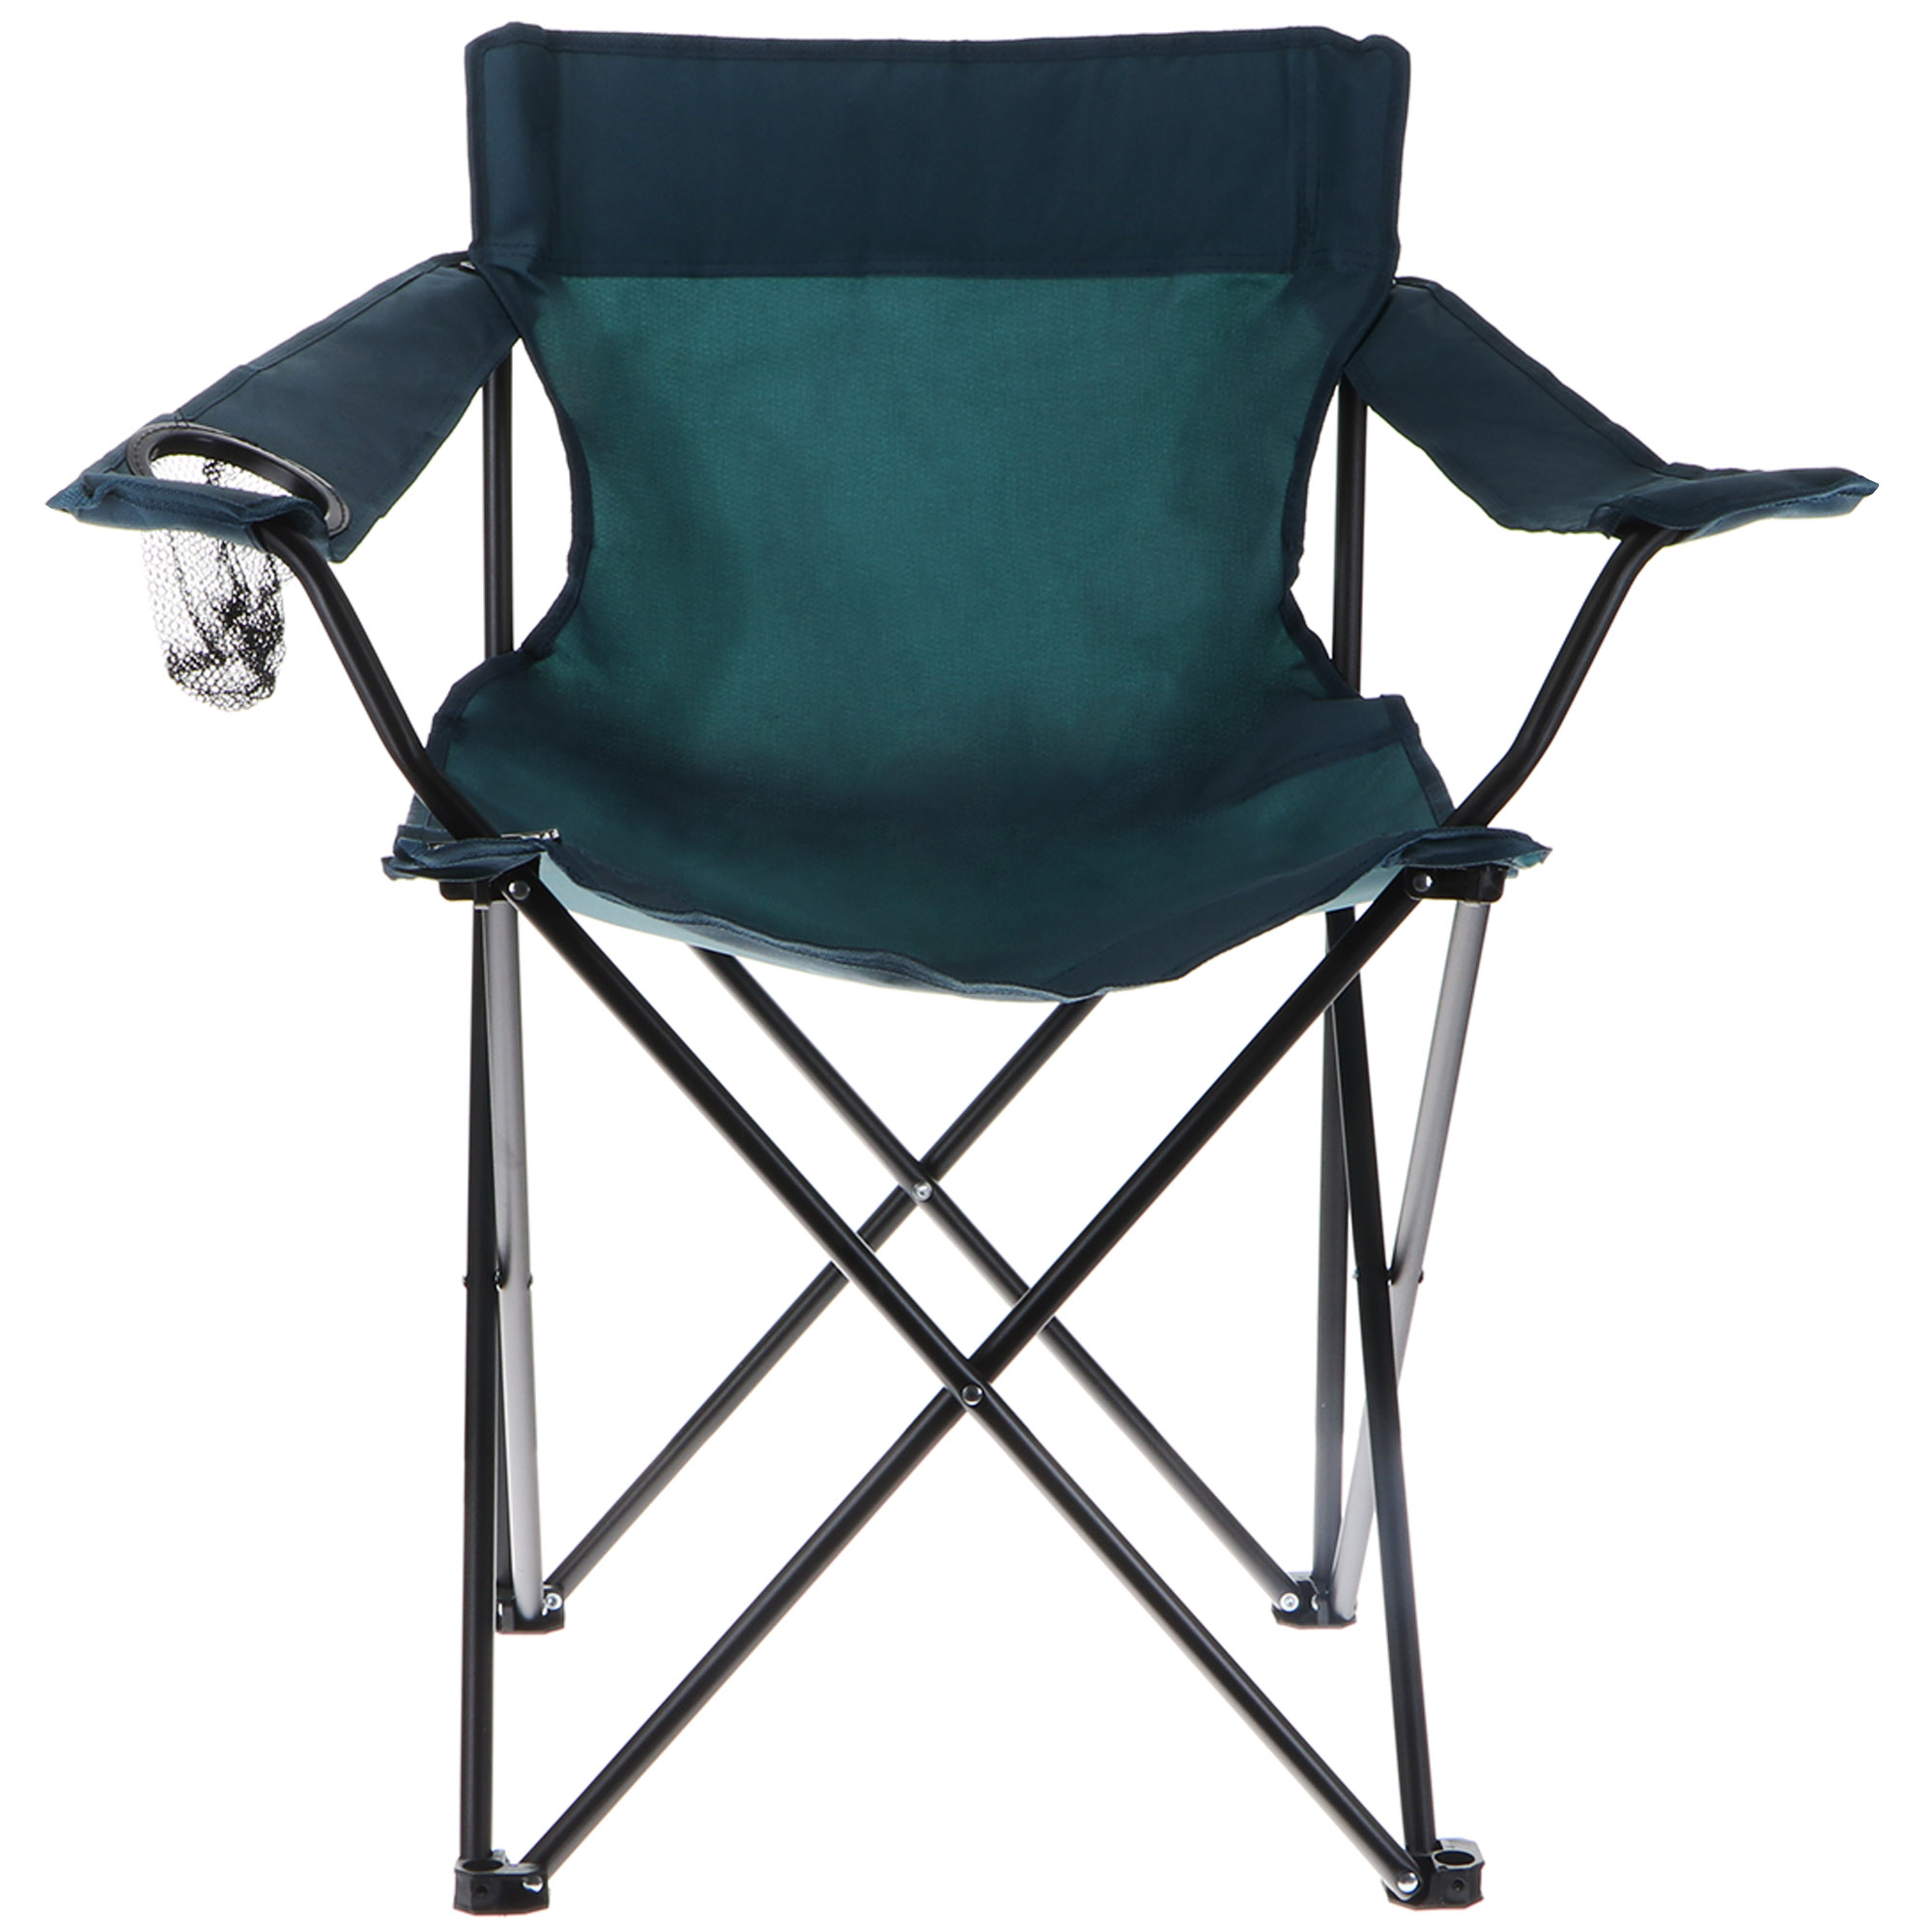 Кресло складное Koopman camping 81x51x42cm, цвет черный - фото 1